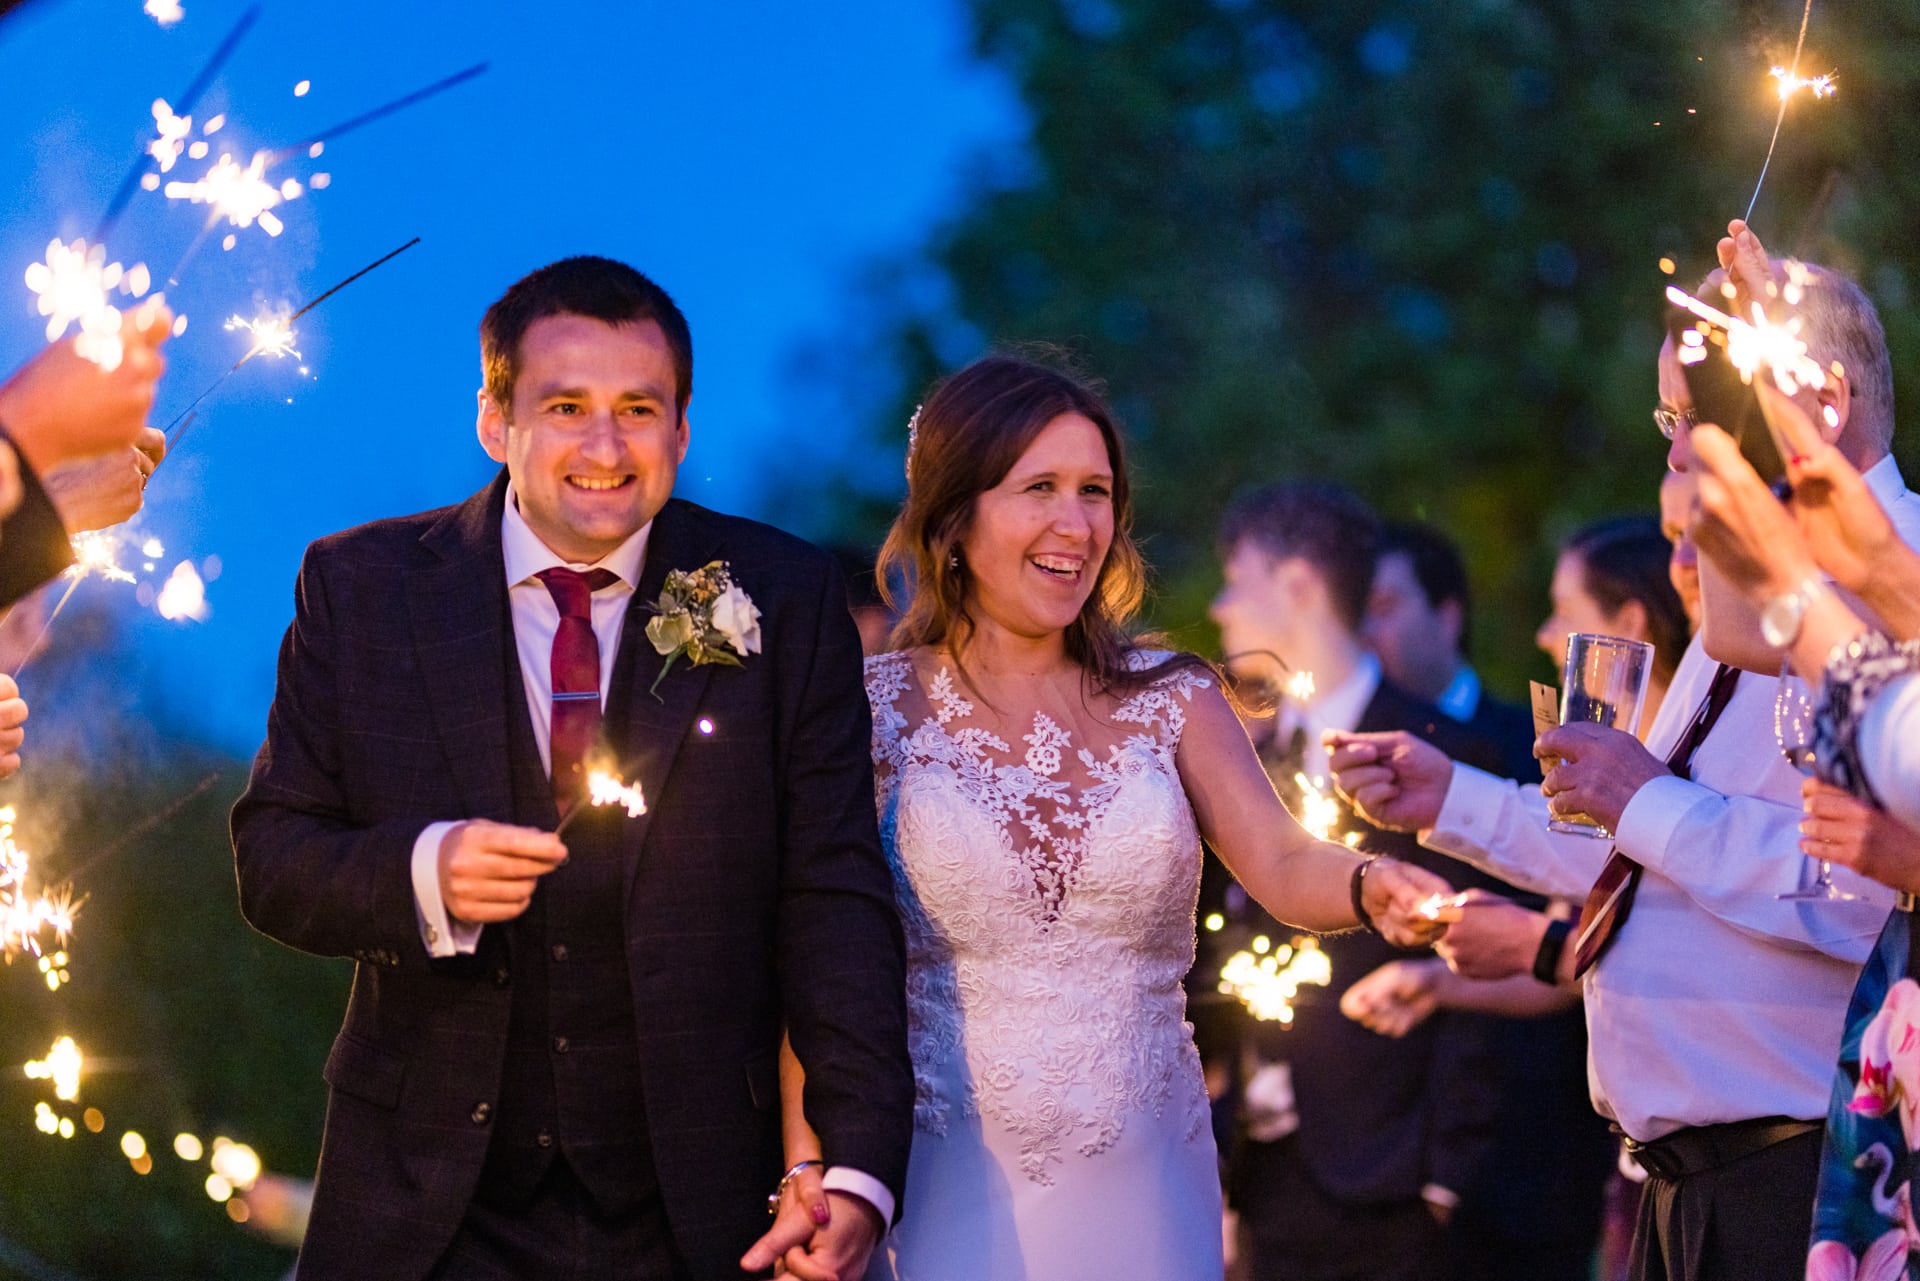 Wedding couple sparklers sunset